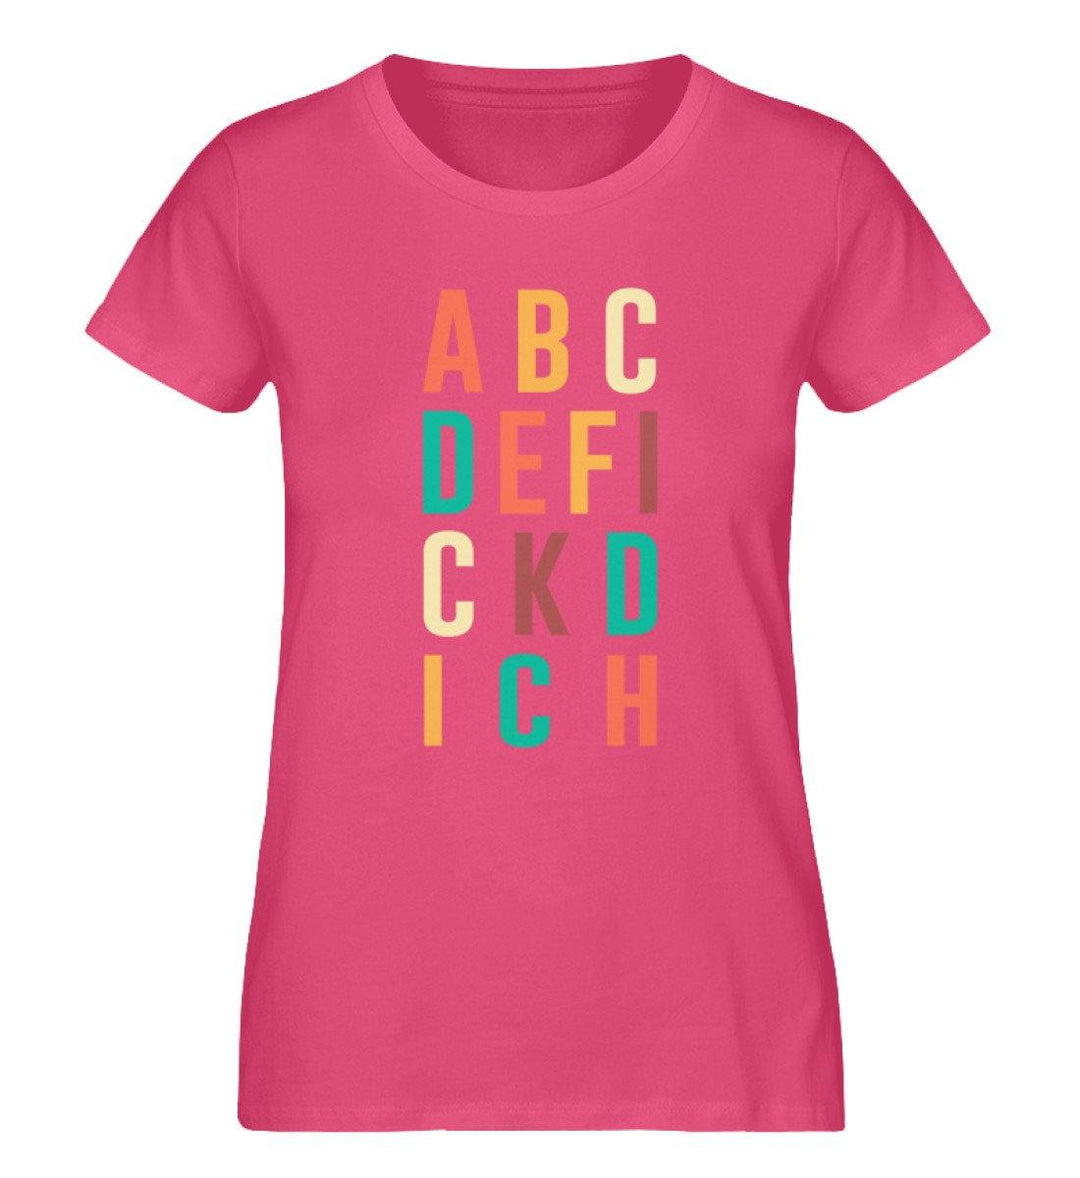 ABCDEFICKDICH - Words on Shirts - PR  - Damen Premium Organic Shirt - Words on Shirts Sag es mit dem Mittelfinger Shirts Hoodies Sweatshirt Taschen Gymsack Spruch Sprüche Statement